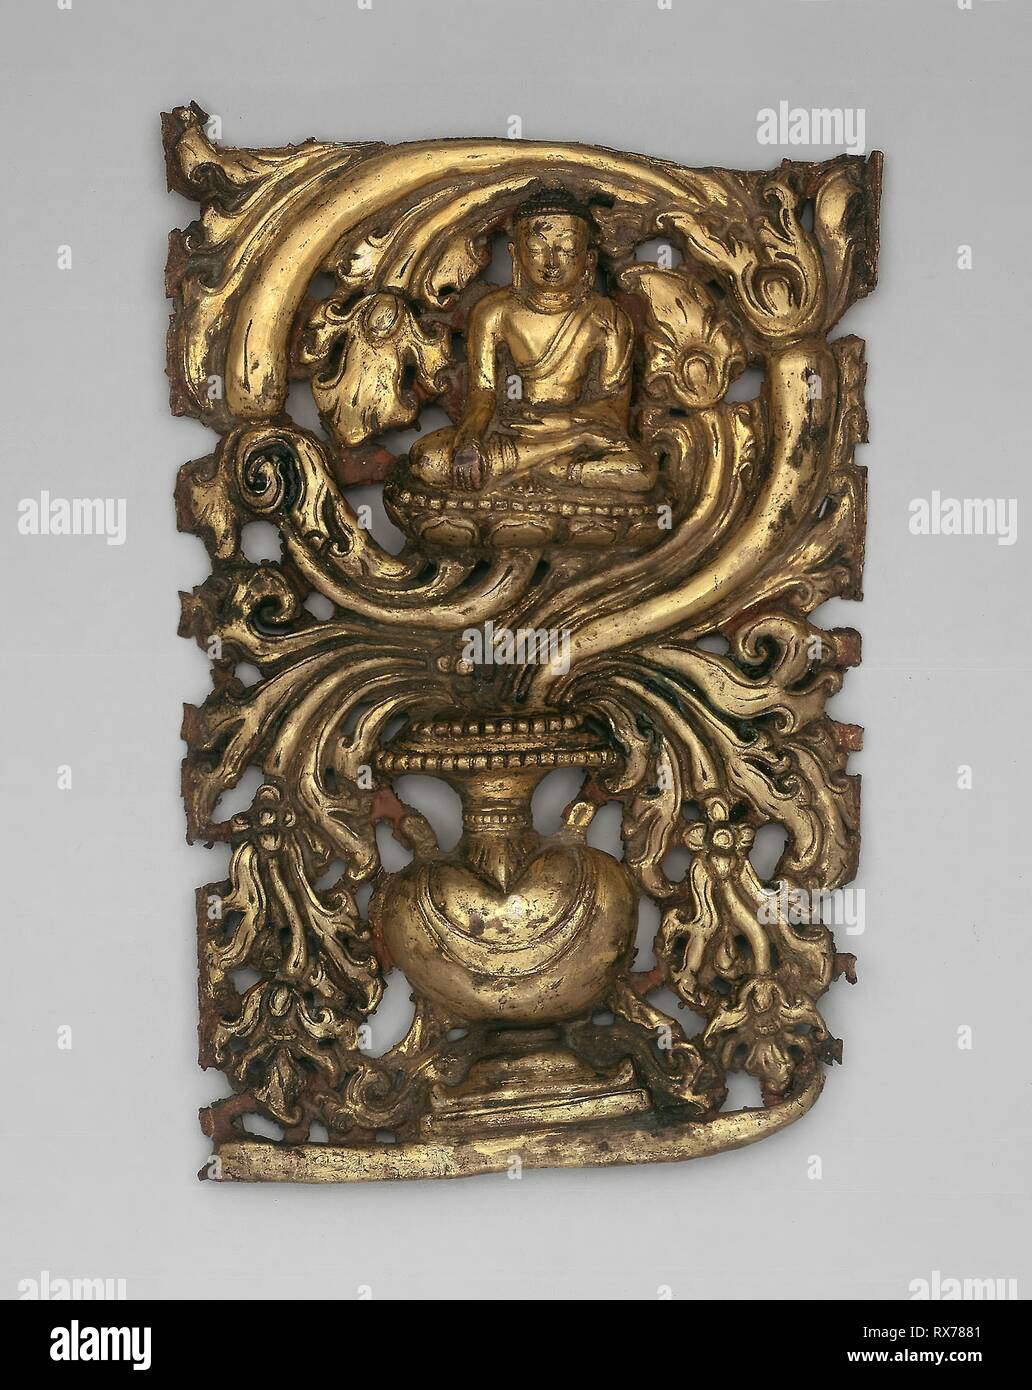 Akshobhya Bouddha transcendant et de Navires débordant de feuillage (Purnagata). Le sud du Tibet ou du Népal. Date : 1401-1600. Dimensions : 19,8 x 13,1 x 2,6 cm (7 13/16 x 5 3/16 x 1 1/16 in.). Cuivre Doré a travaillé en repousse. Origine : le Tibet. Musée : le Chicago Art Institute. Banque D'Images